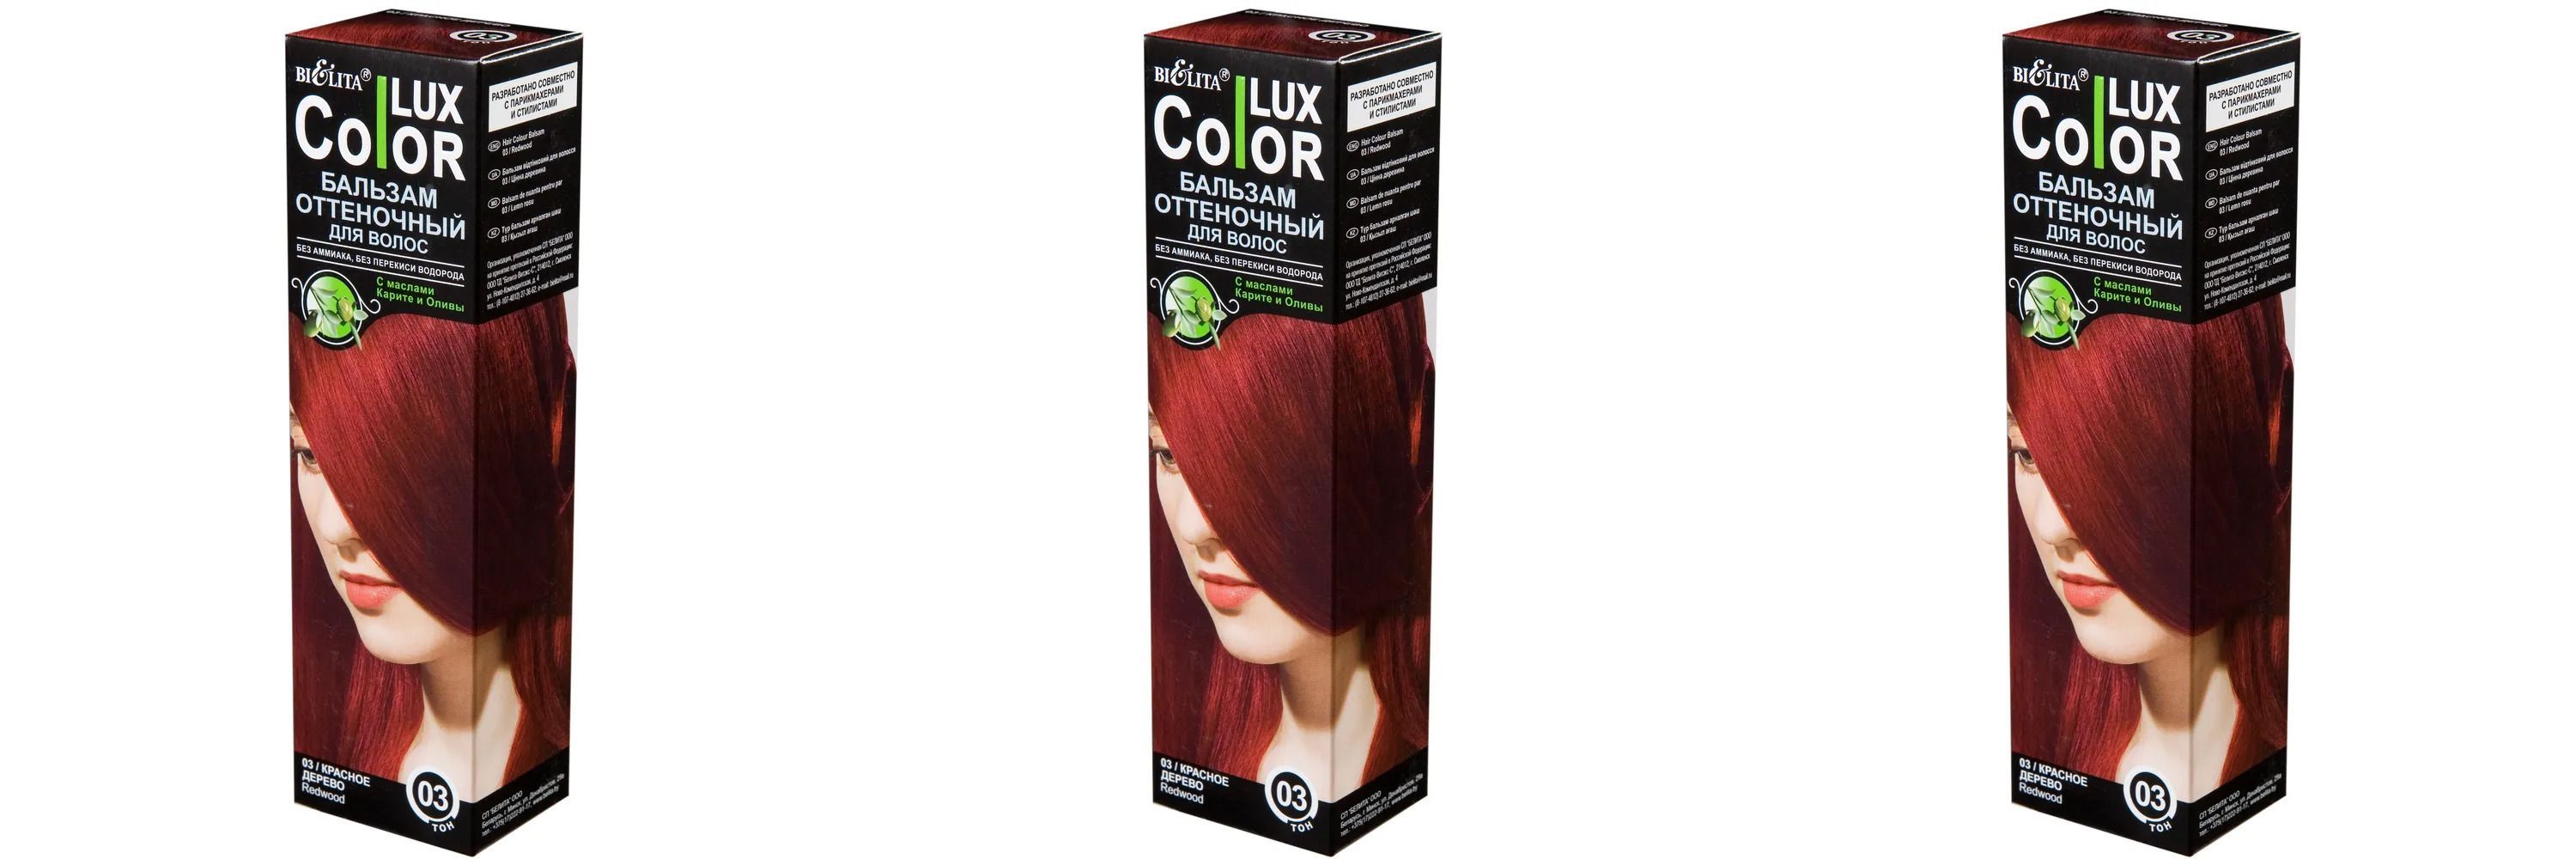 Color Lux бальзам оттеночный для волос тон 03 красное дерево 100мл. Lux Color оттеночный бальзам-маска для волос тон 27 марсала (туба 100 мл). Ликато оттеночный шампунь. Бел Color Lux бальзам оттен. Т.08.1 тепл каштан. Оттеночный белита отзывы